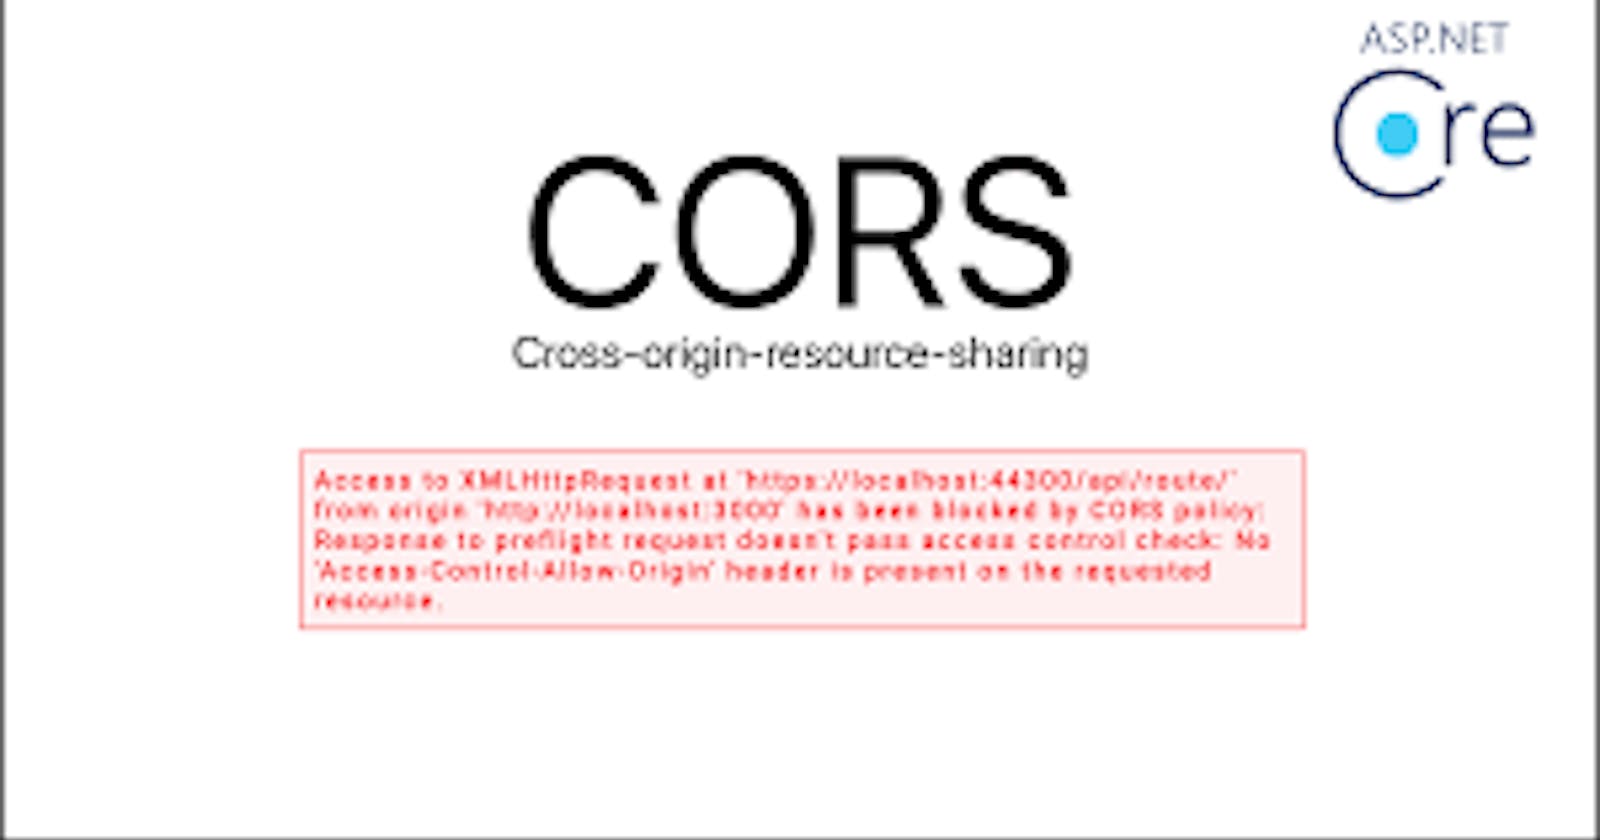 CORS (Cross-Origin Resource Sharing